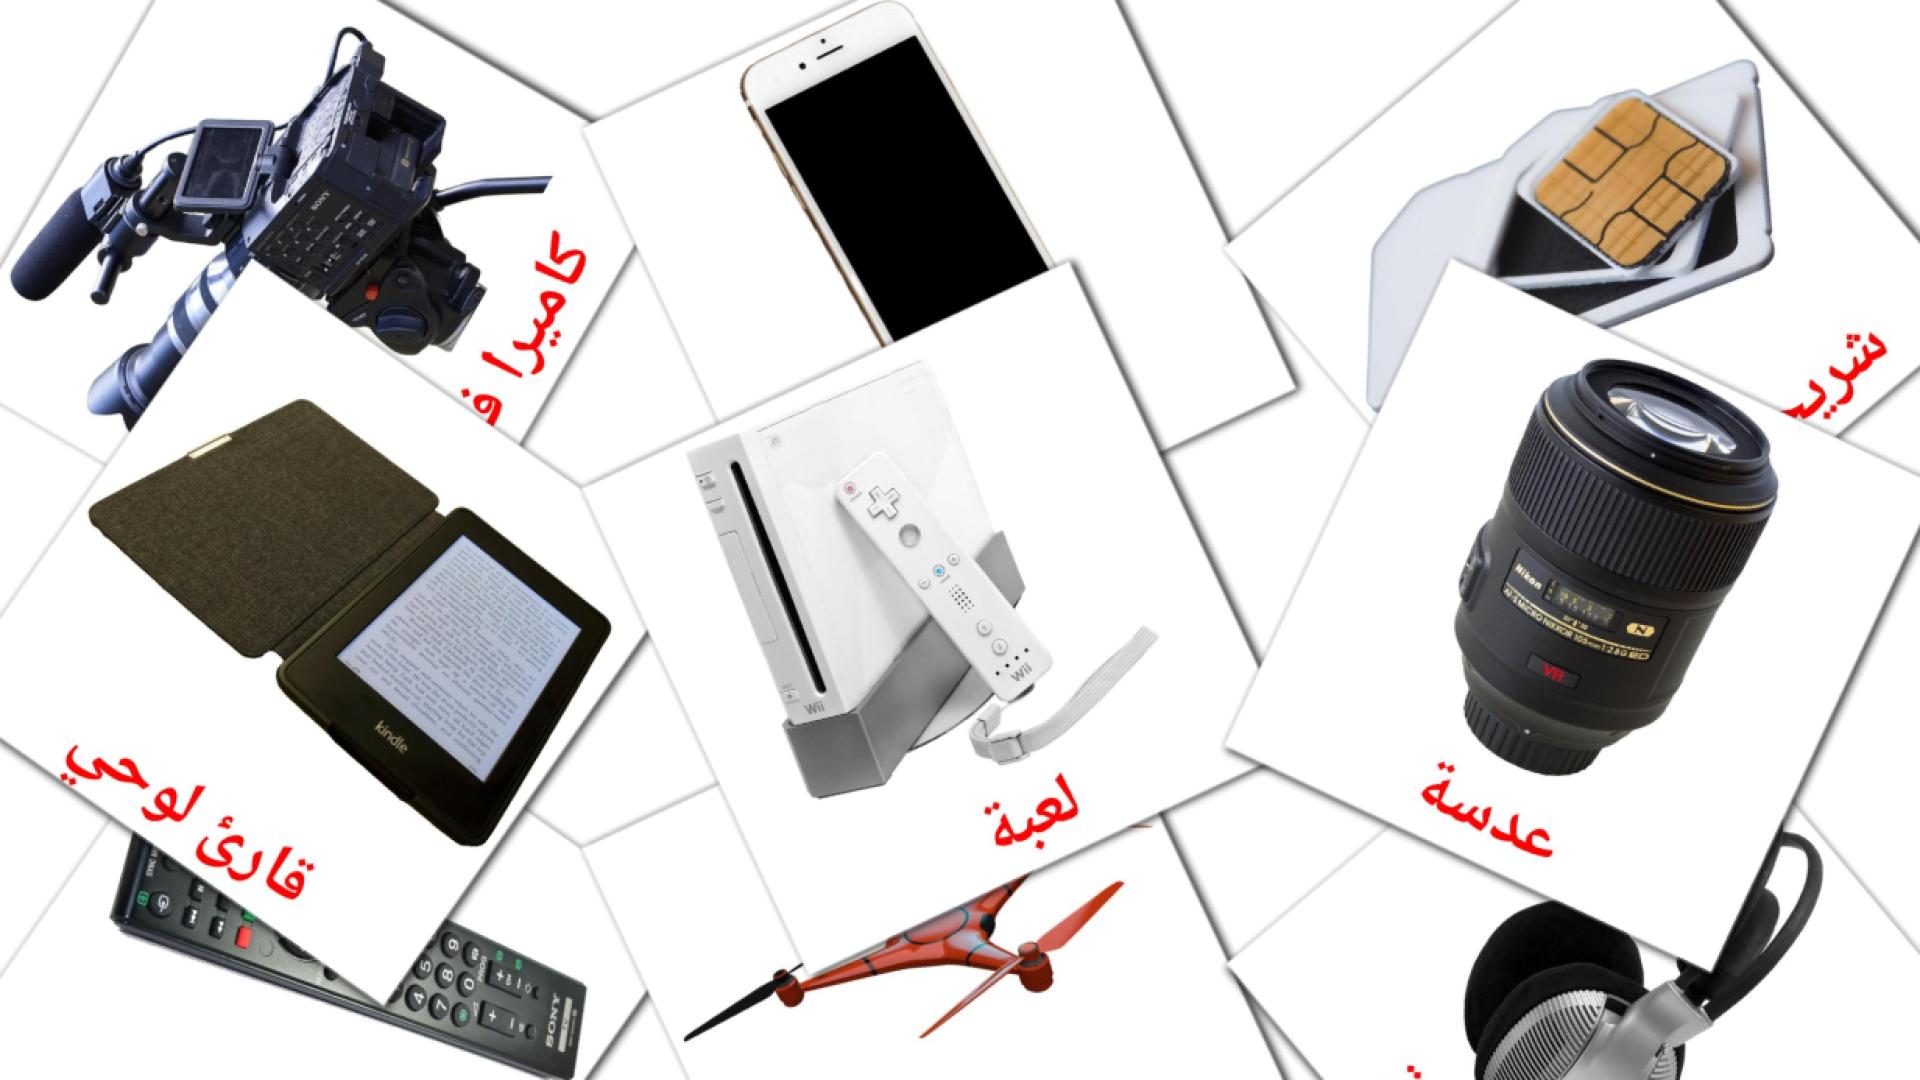 Digitale Geräte - Arabisch Vokabelkarten